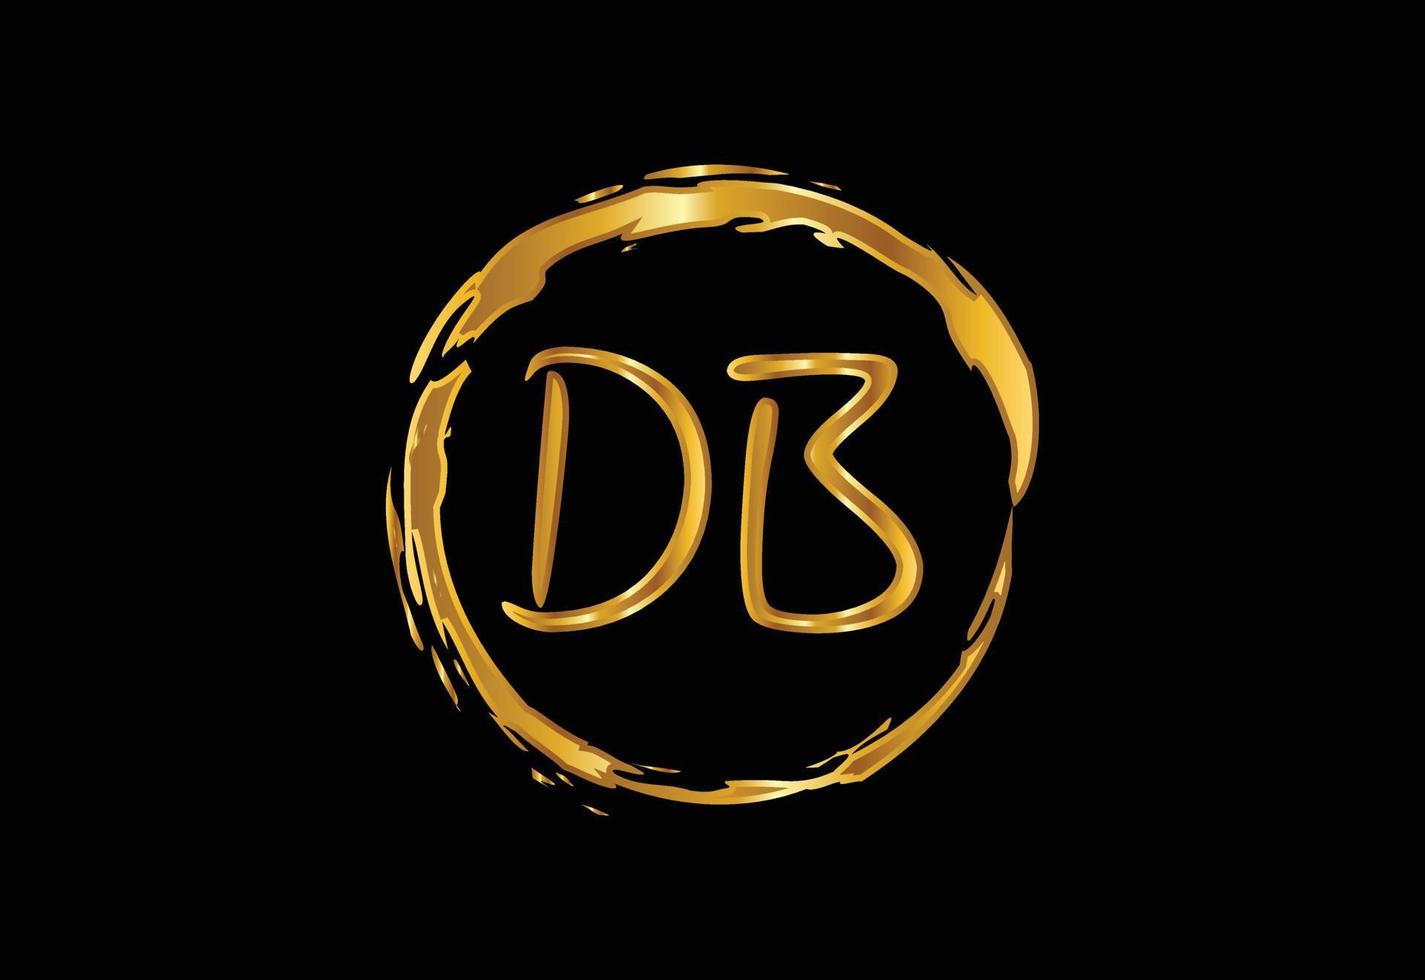 Anfangsbuchstabe db Logo Design Vektor. grafisches alphabetsymbol für unternehmensidentität vektor